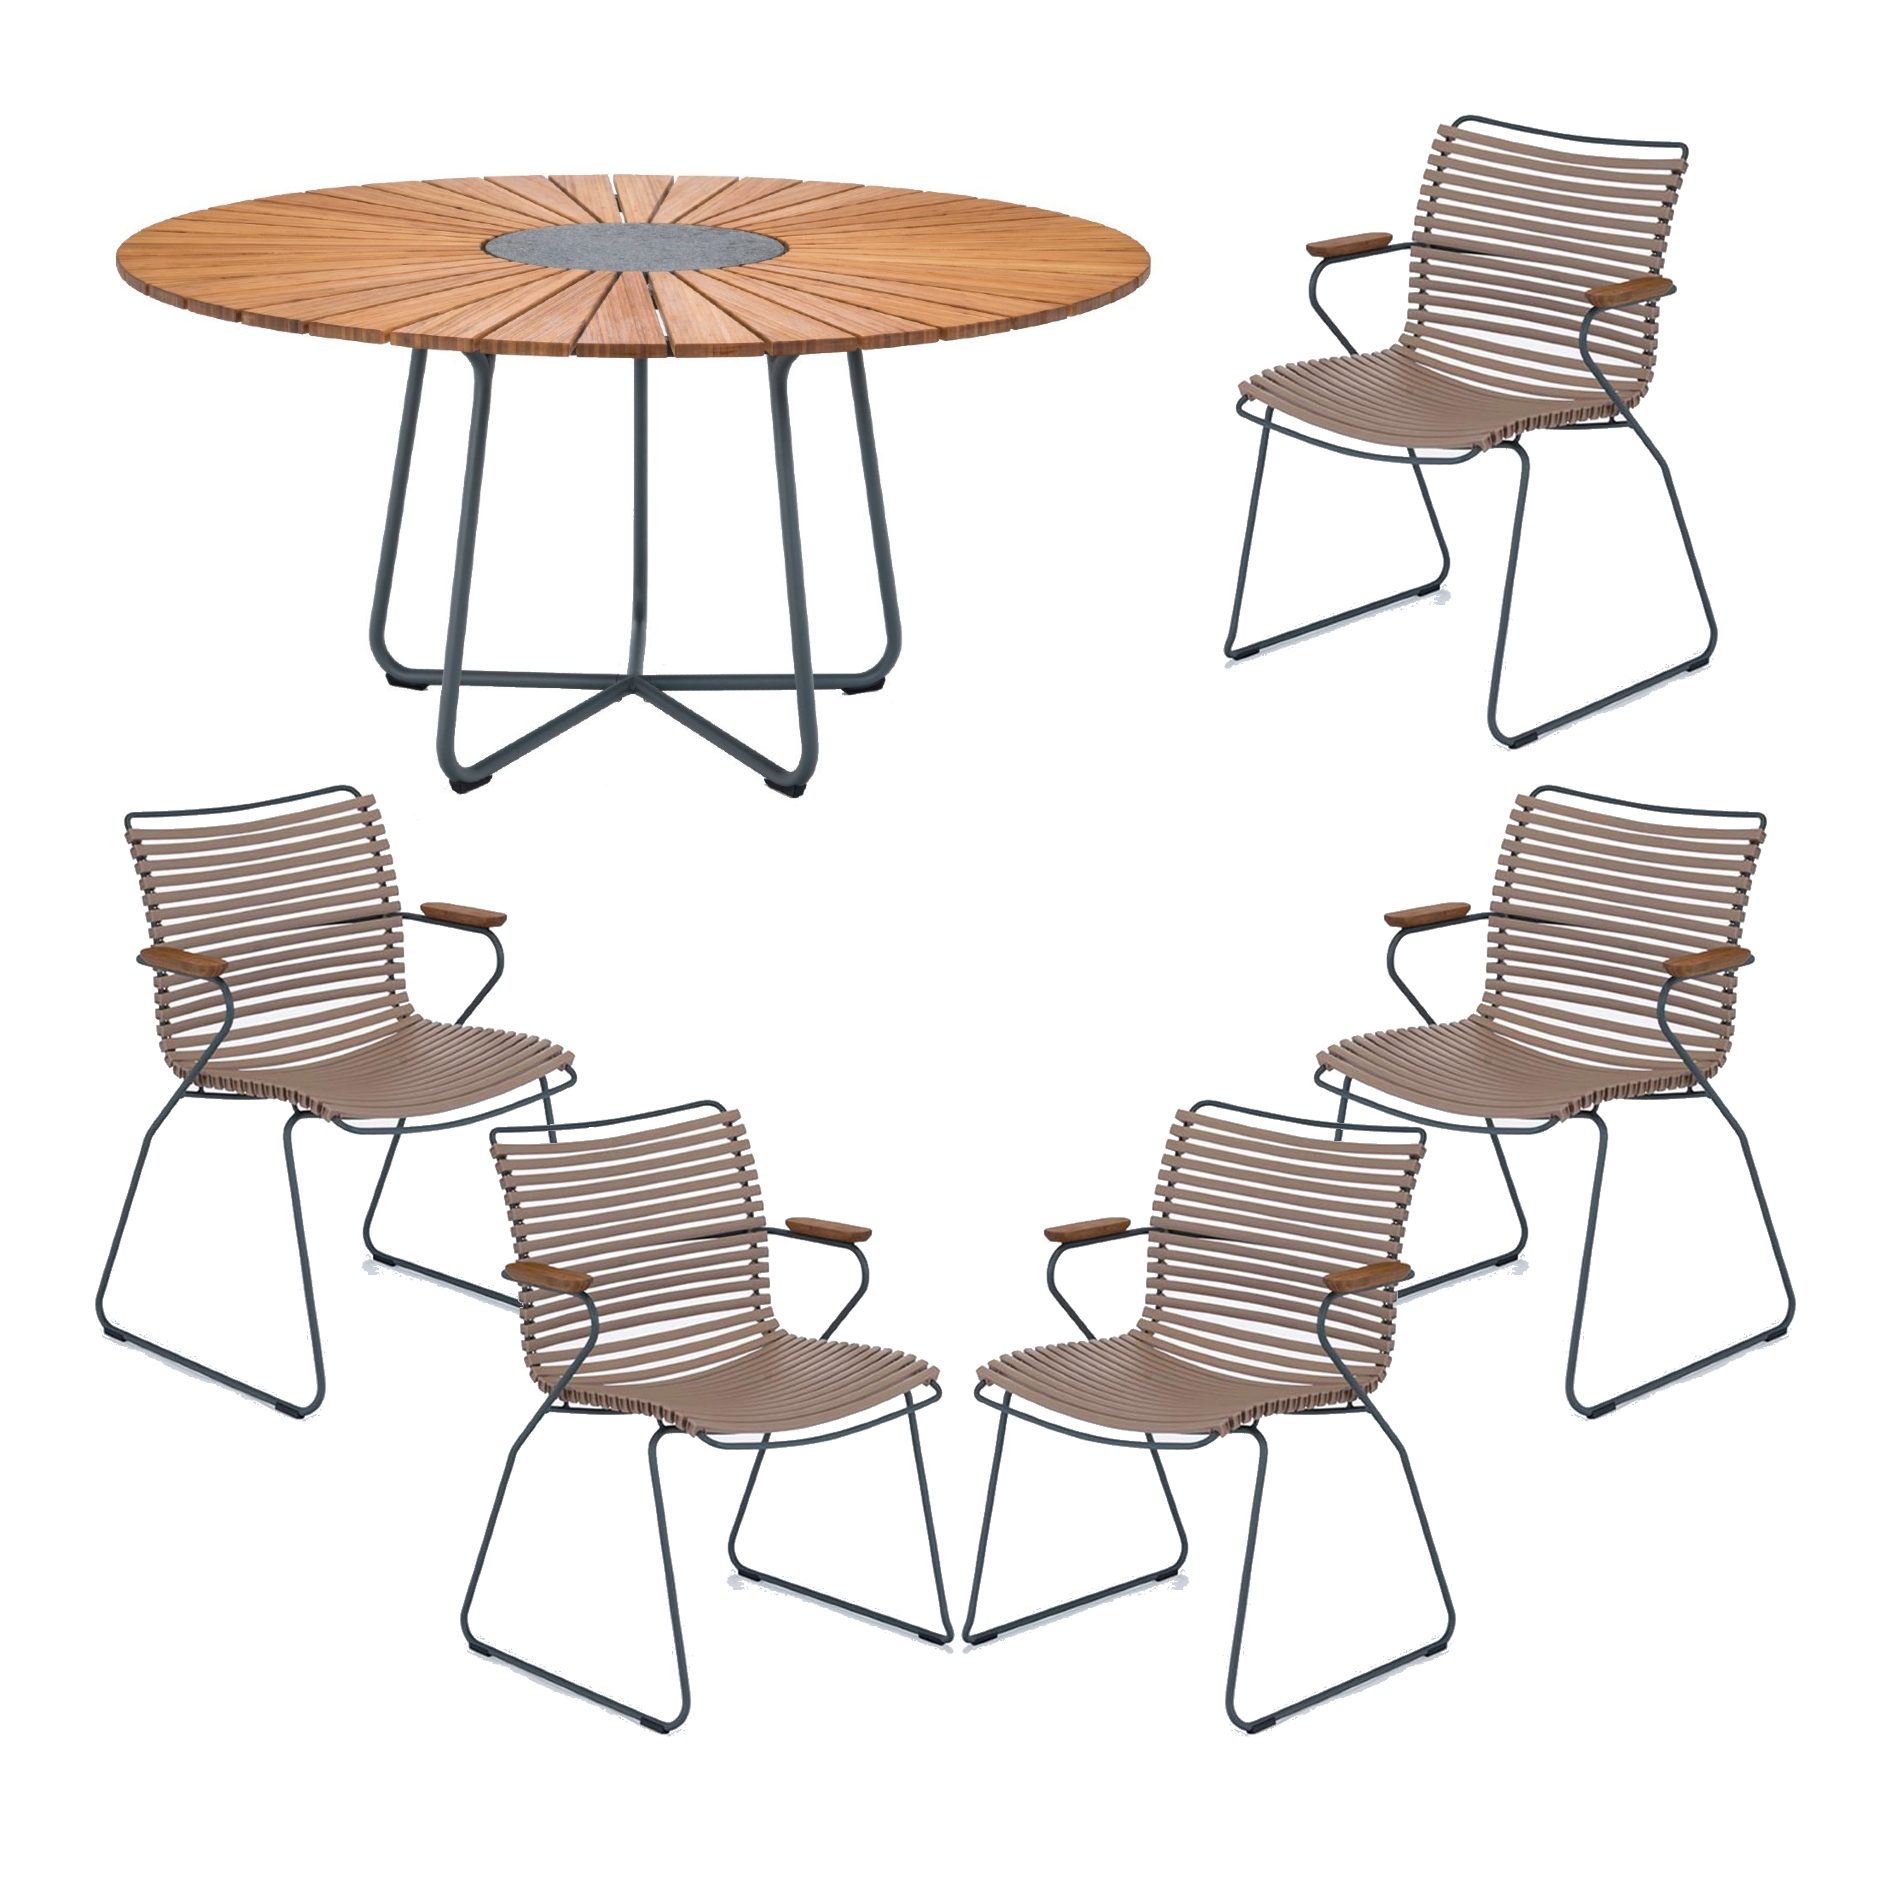 Houe Gartenmöbel-Set mit Tisch "Circle" Ø 150 cm und 5x Stapelsessel "Click", Lamellen sand, Tischplatte Bambus